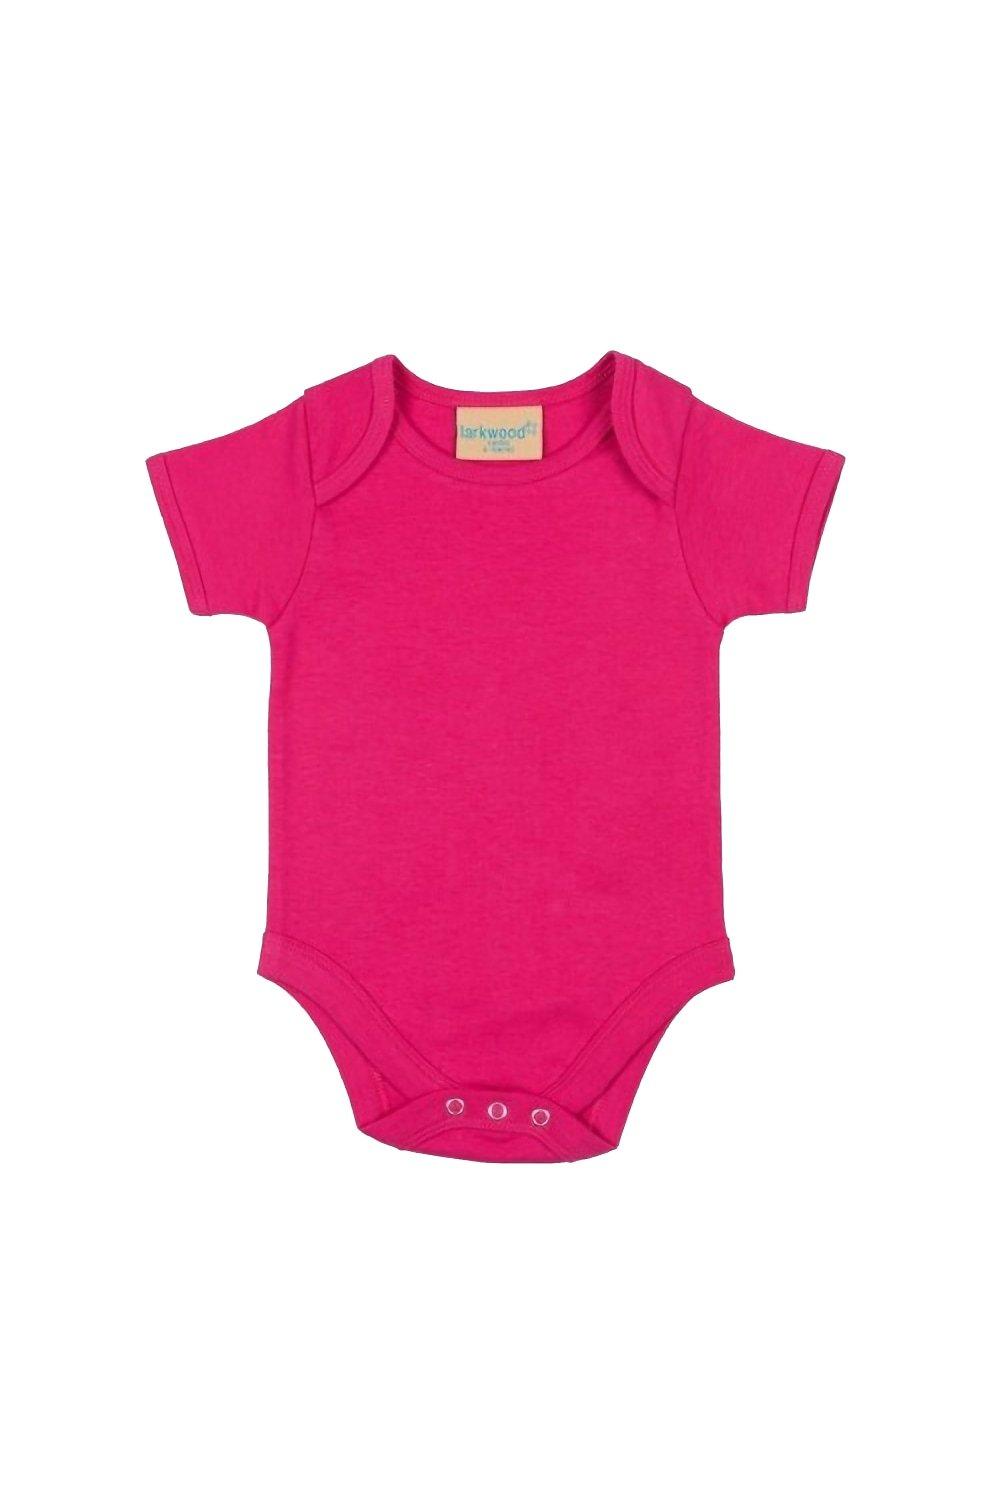 Боди с короткими рукавами и вырезом-конвертом Larkwood, розовый детское боди с длинным рукавом на возраст 0 12 месяцев